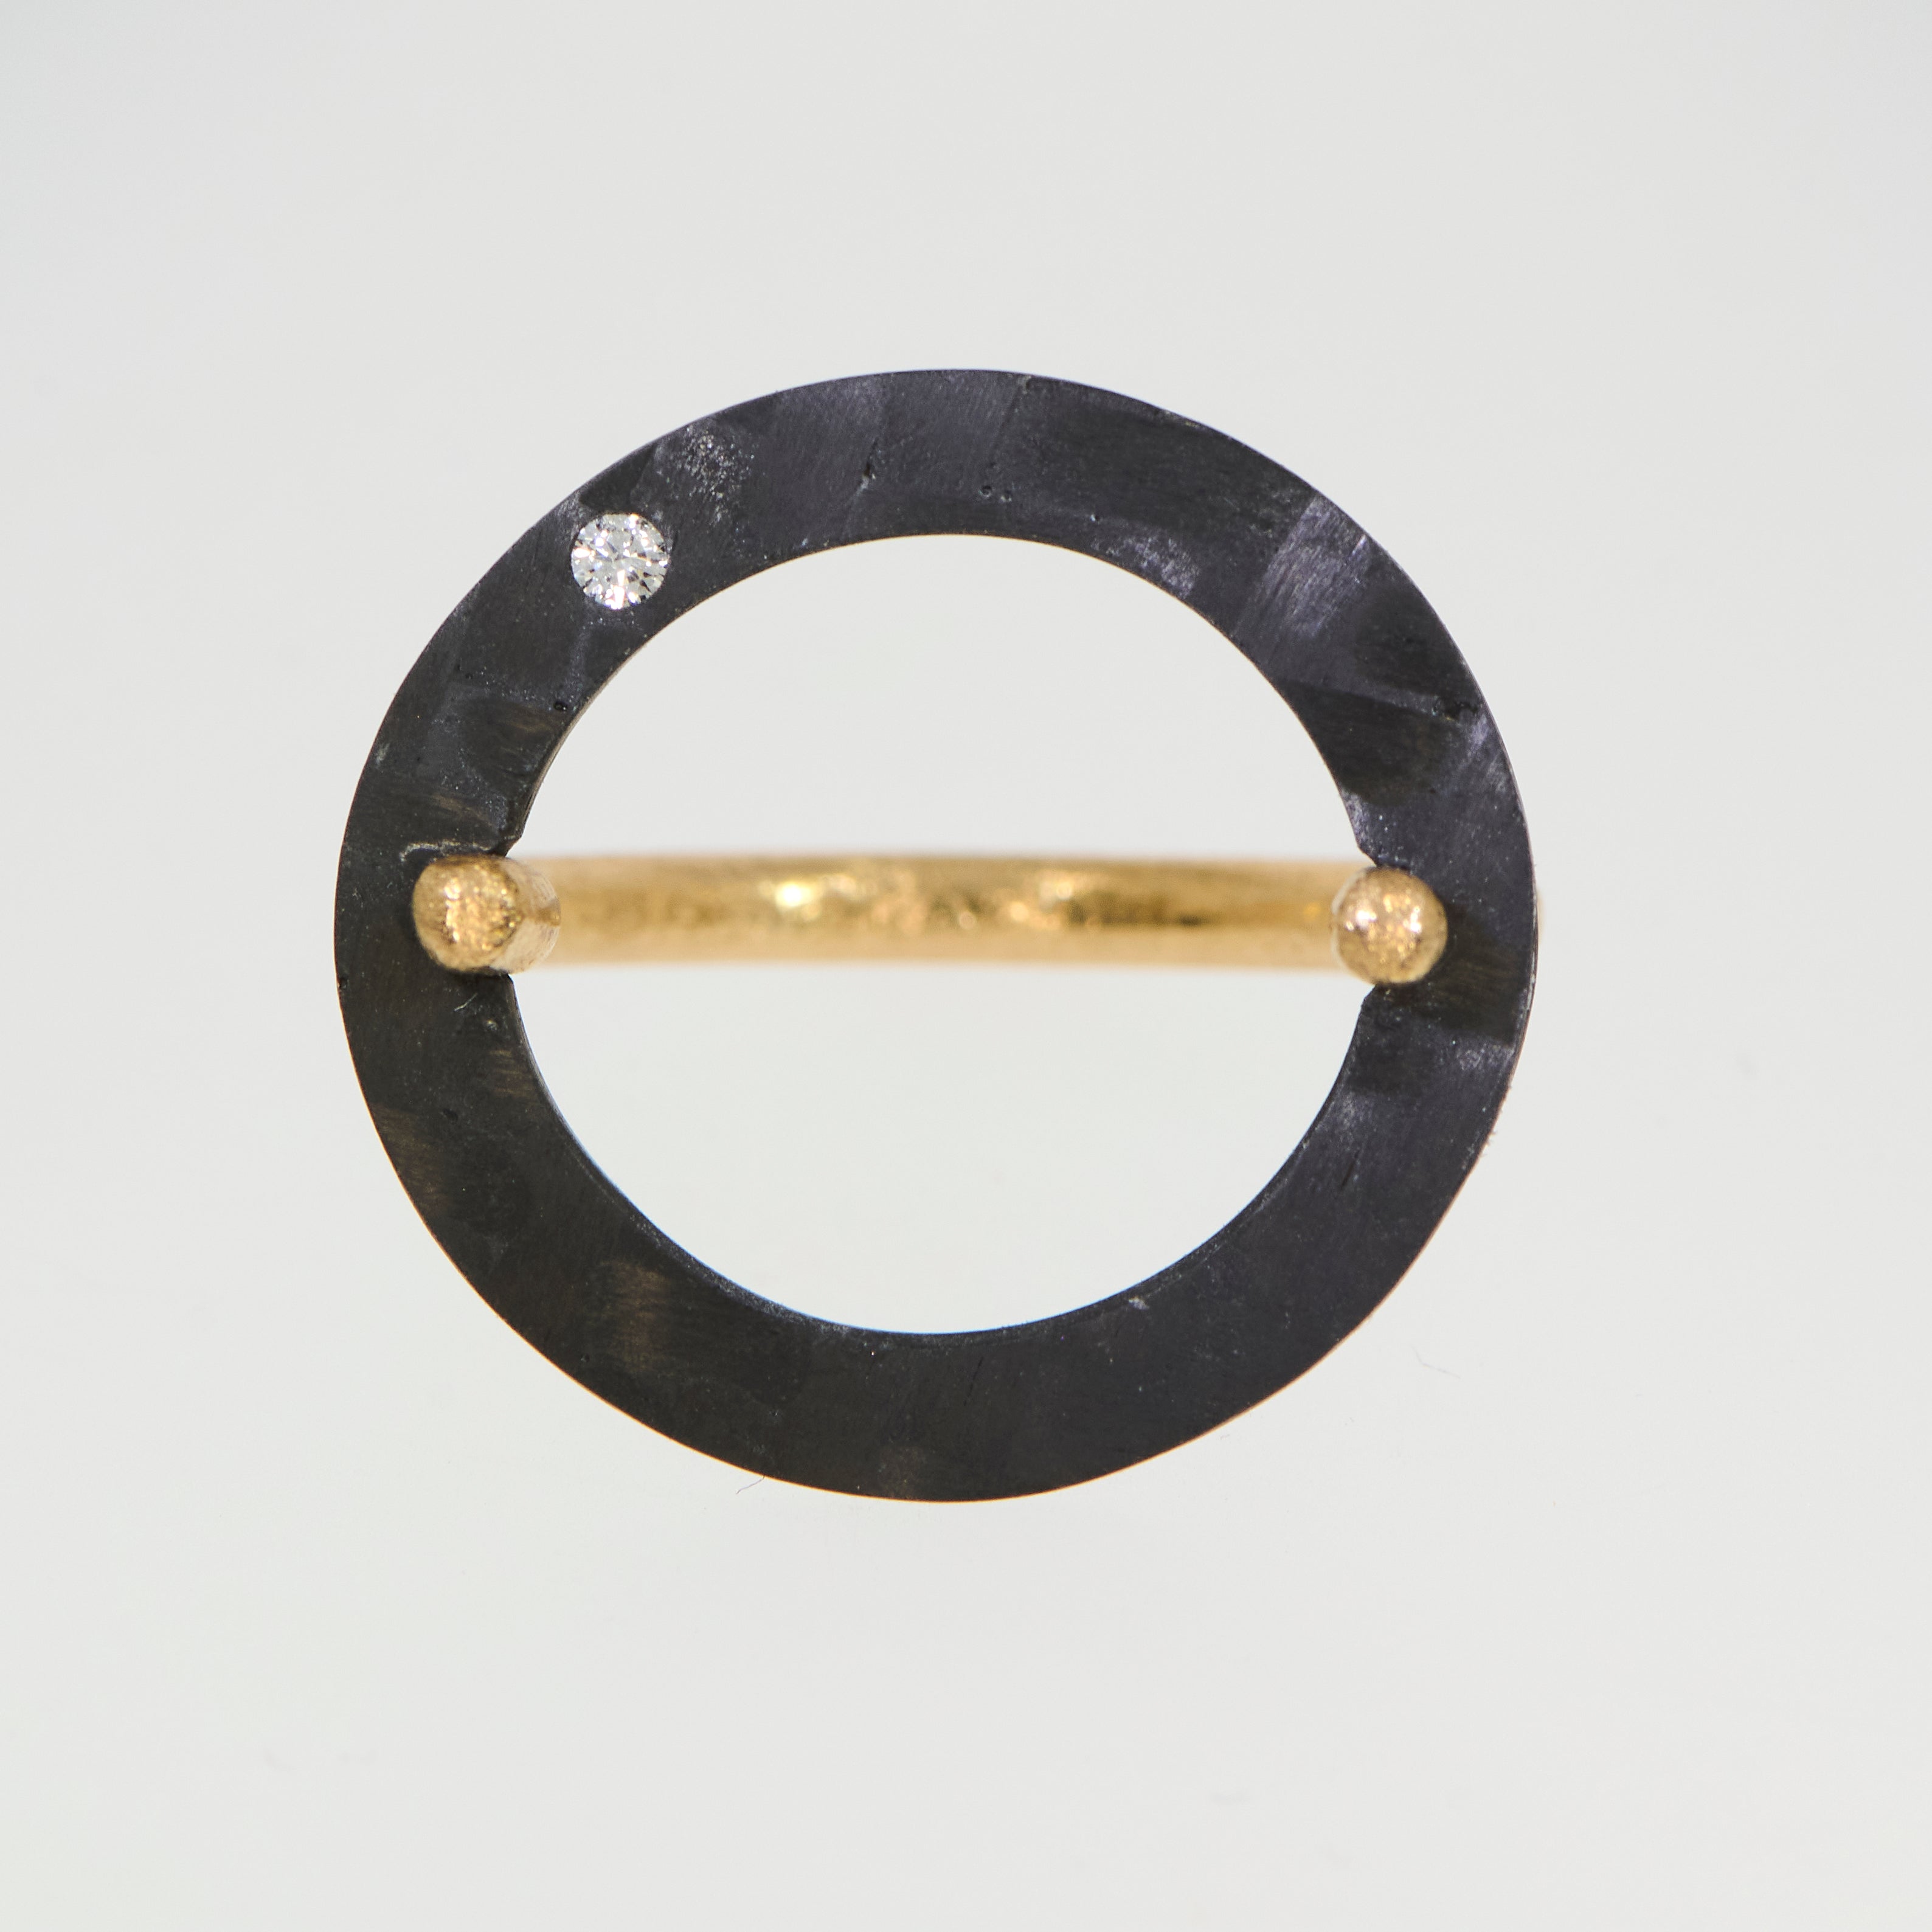 Brugt ring i 14kt gulguld med carbon og diamant